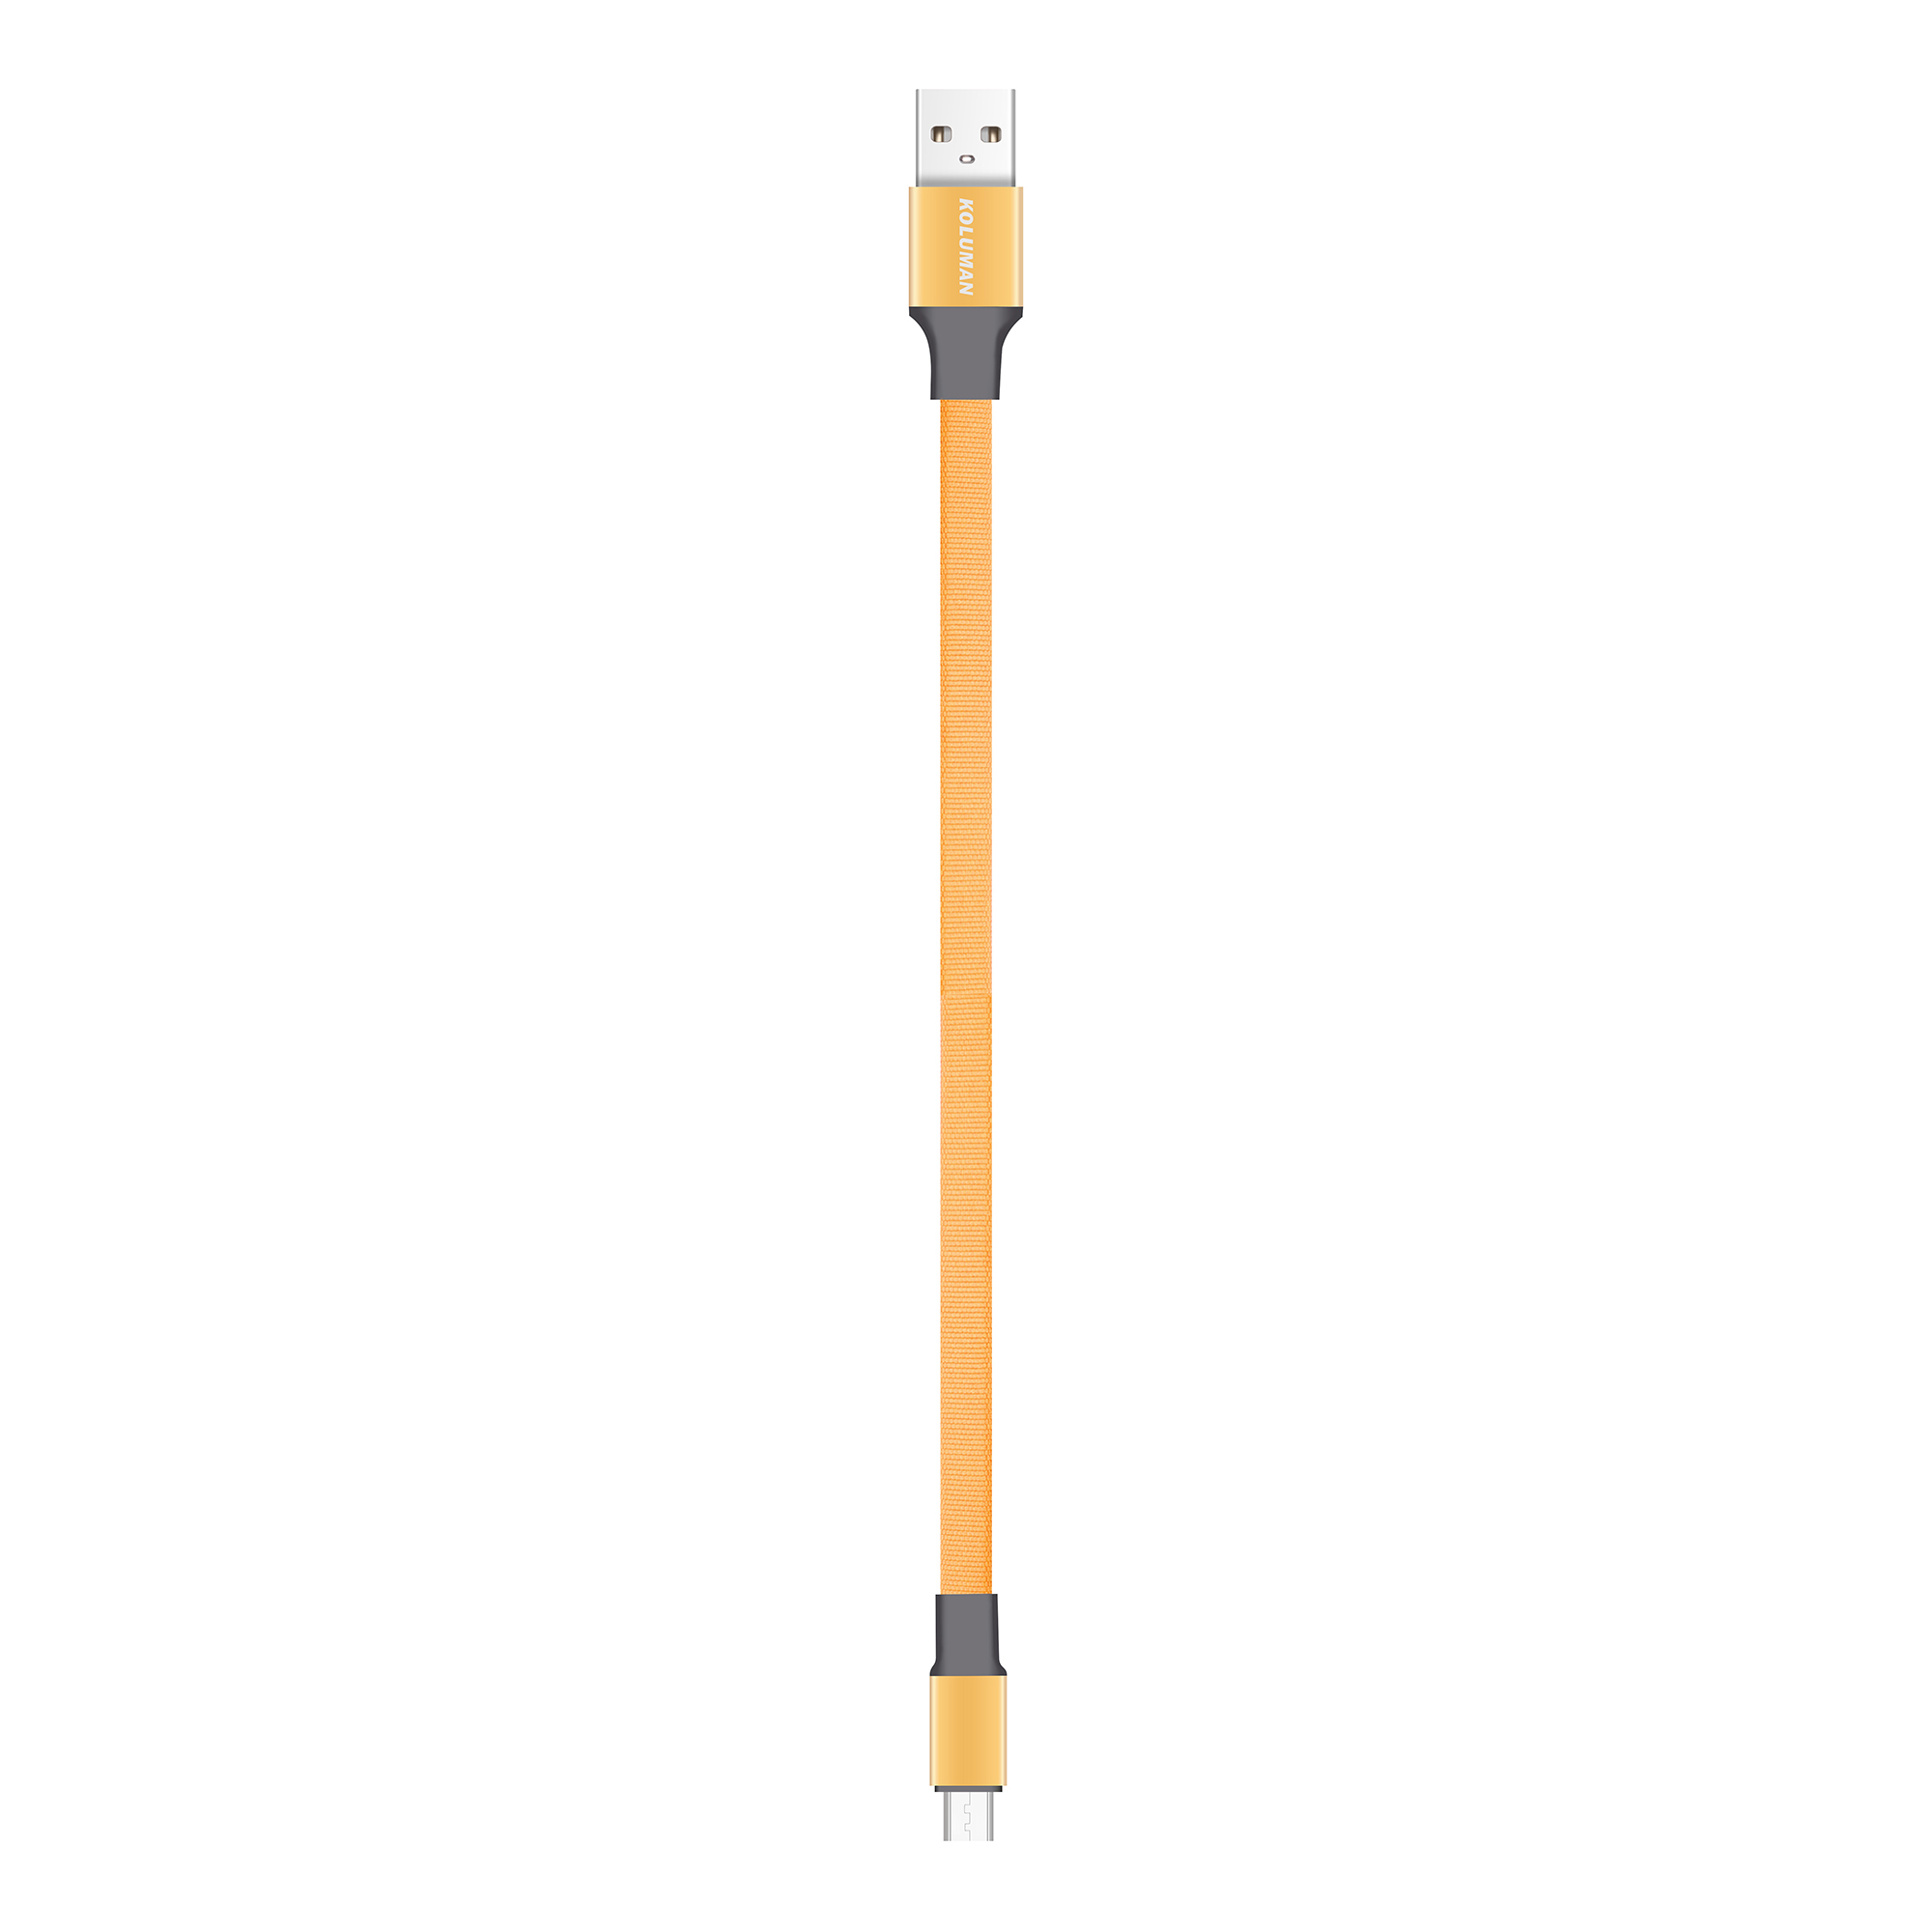 کابل تبدیل USB به microUSB کلومن مدل KD-27 طول 0.2 متر